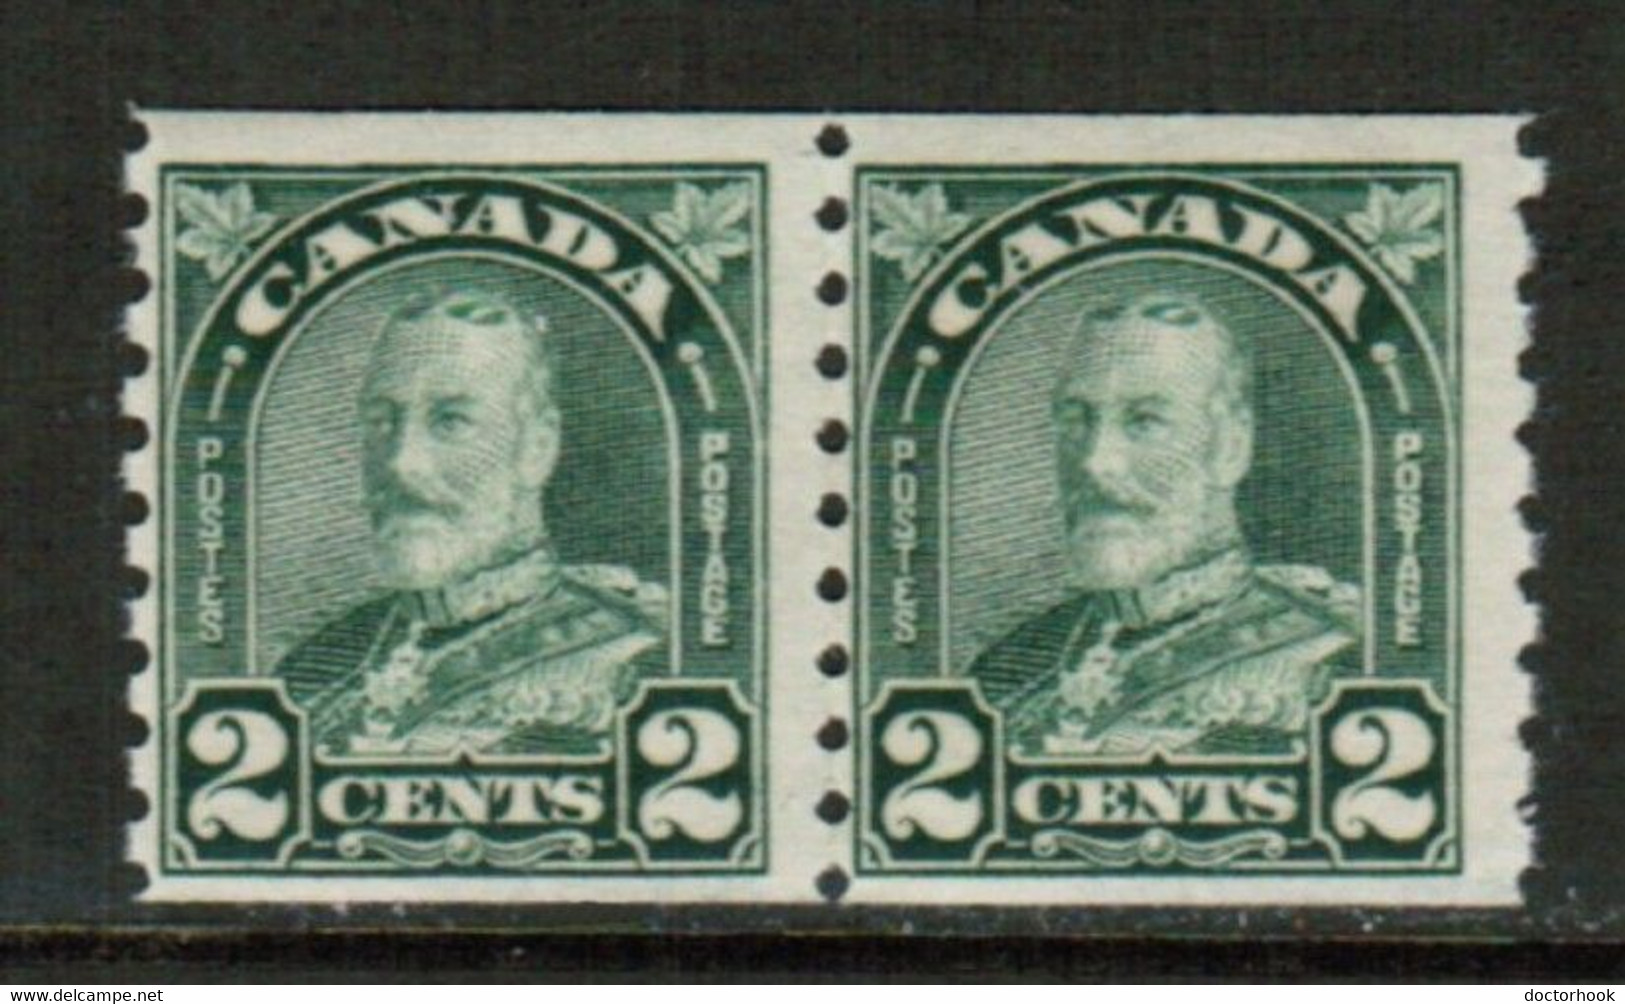 CANADA  Scott # 180* F-VF MINT LH PAIR (Stamp Scan # 783) - Markenrollen